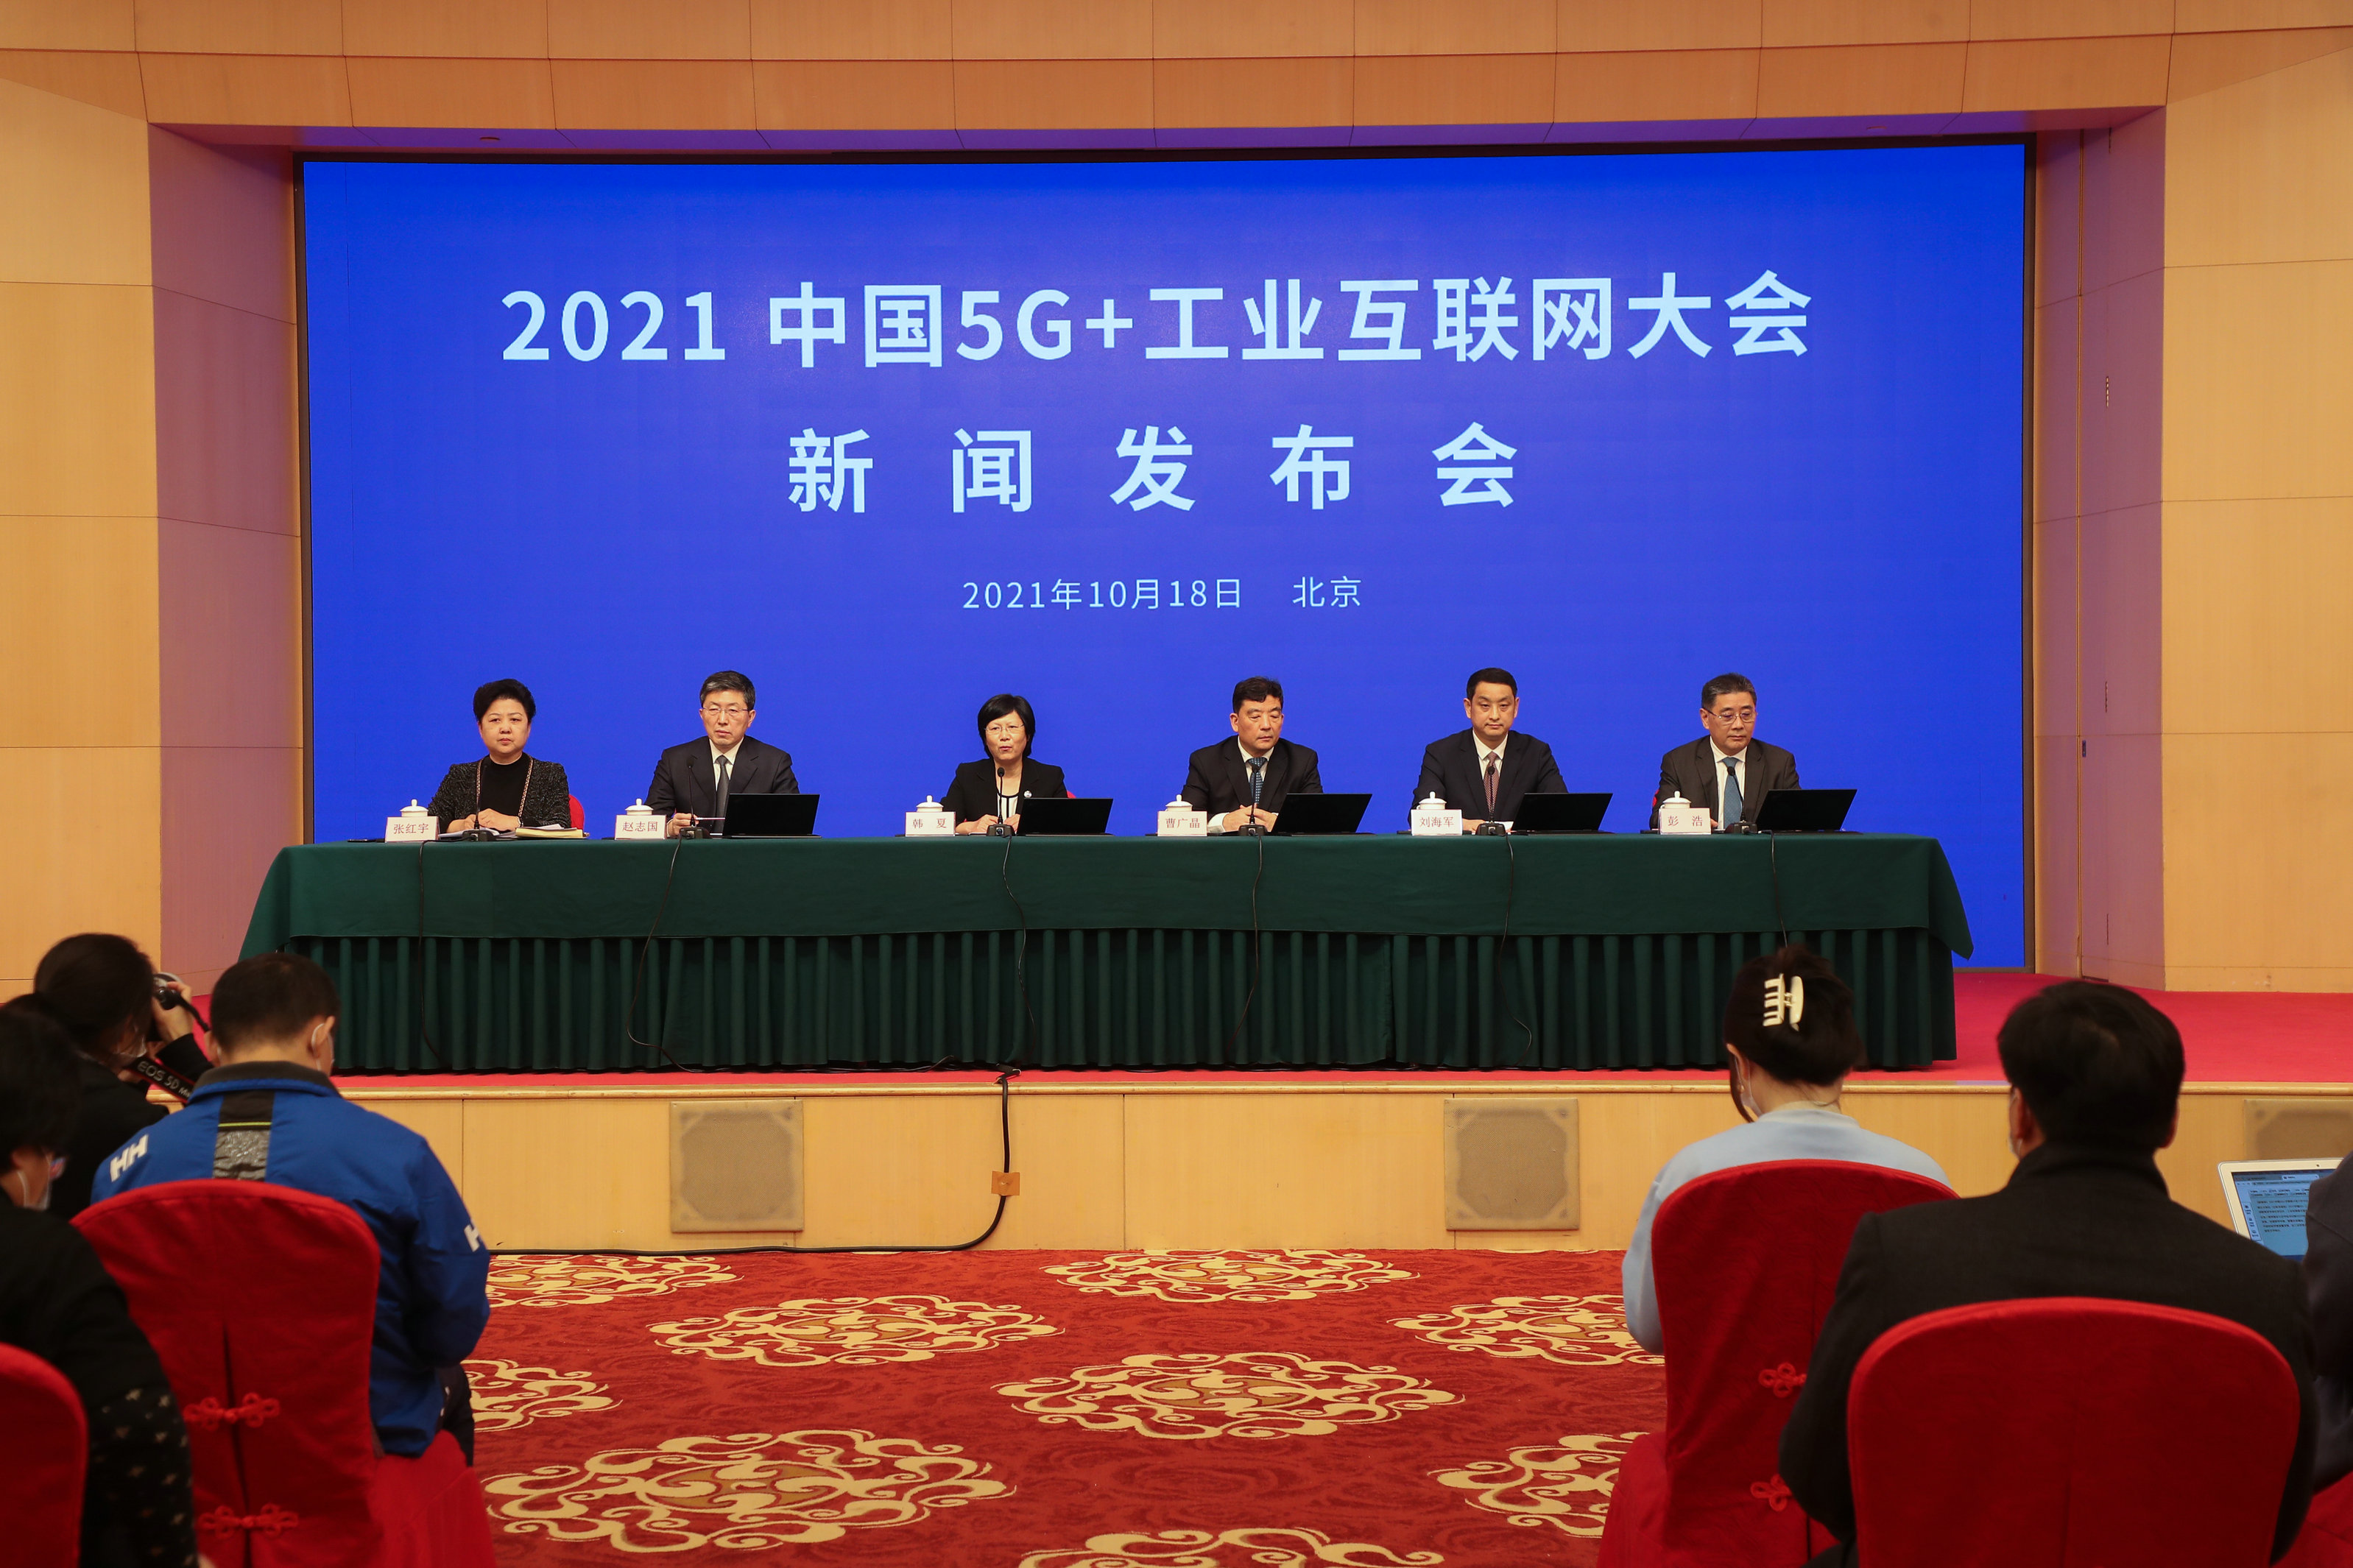 2021中国5G+工业互联网大会将在武汉举行 开放式报名仍在进行